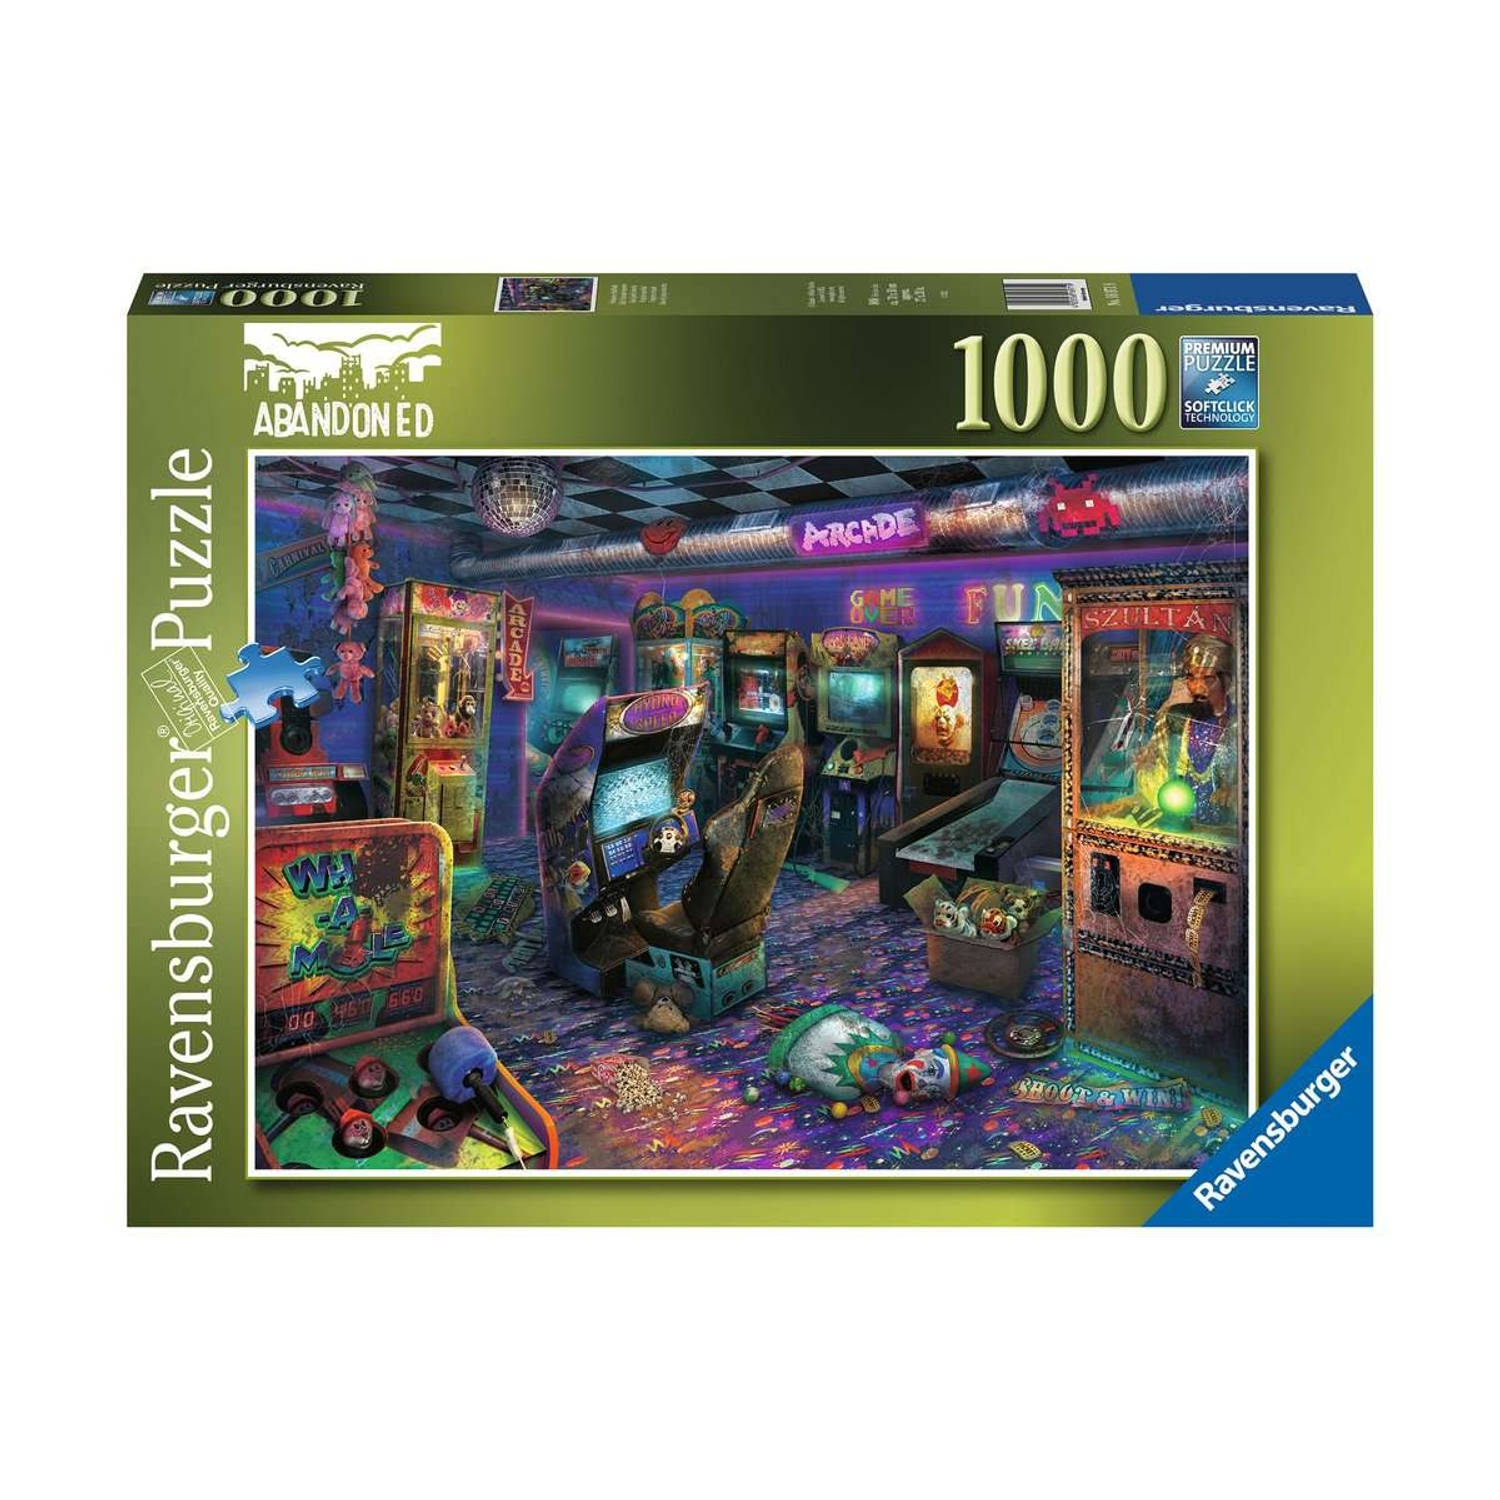 Ravensburger puzzel Forgotten Arcade 1000 stukjes